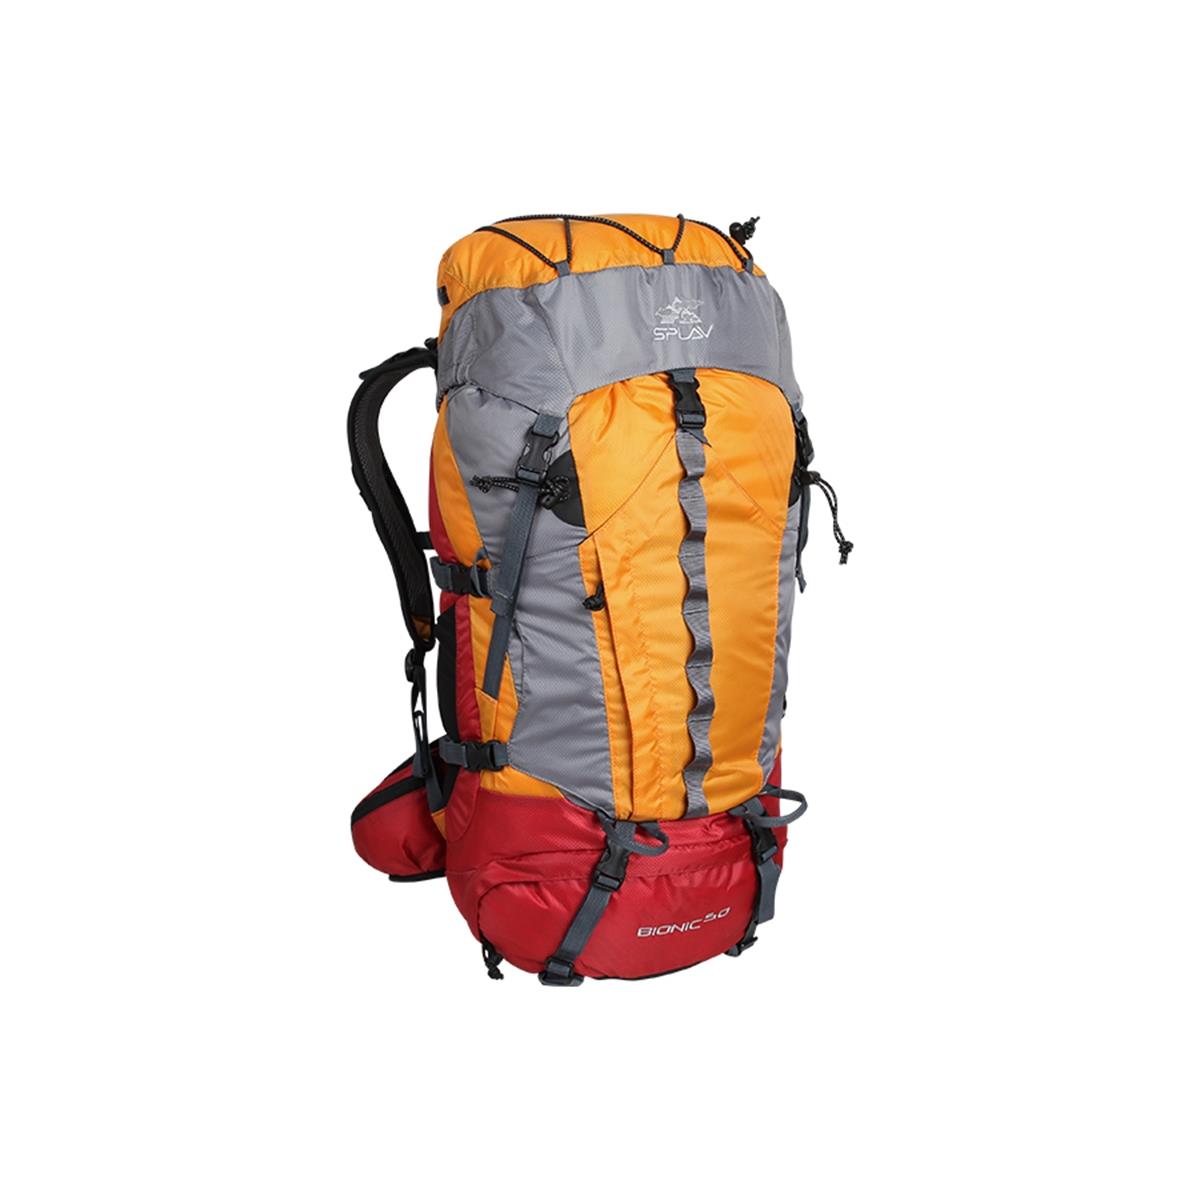 Рюкзак Bionic 50 оранжевый СПЛАВ рюкзак на молнии 3 наружных кармана серый